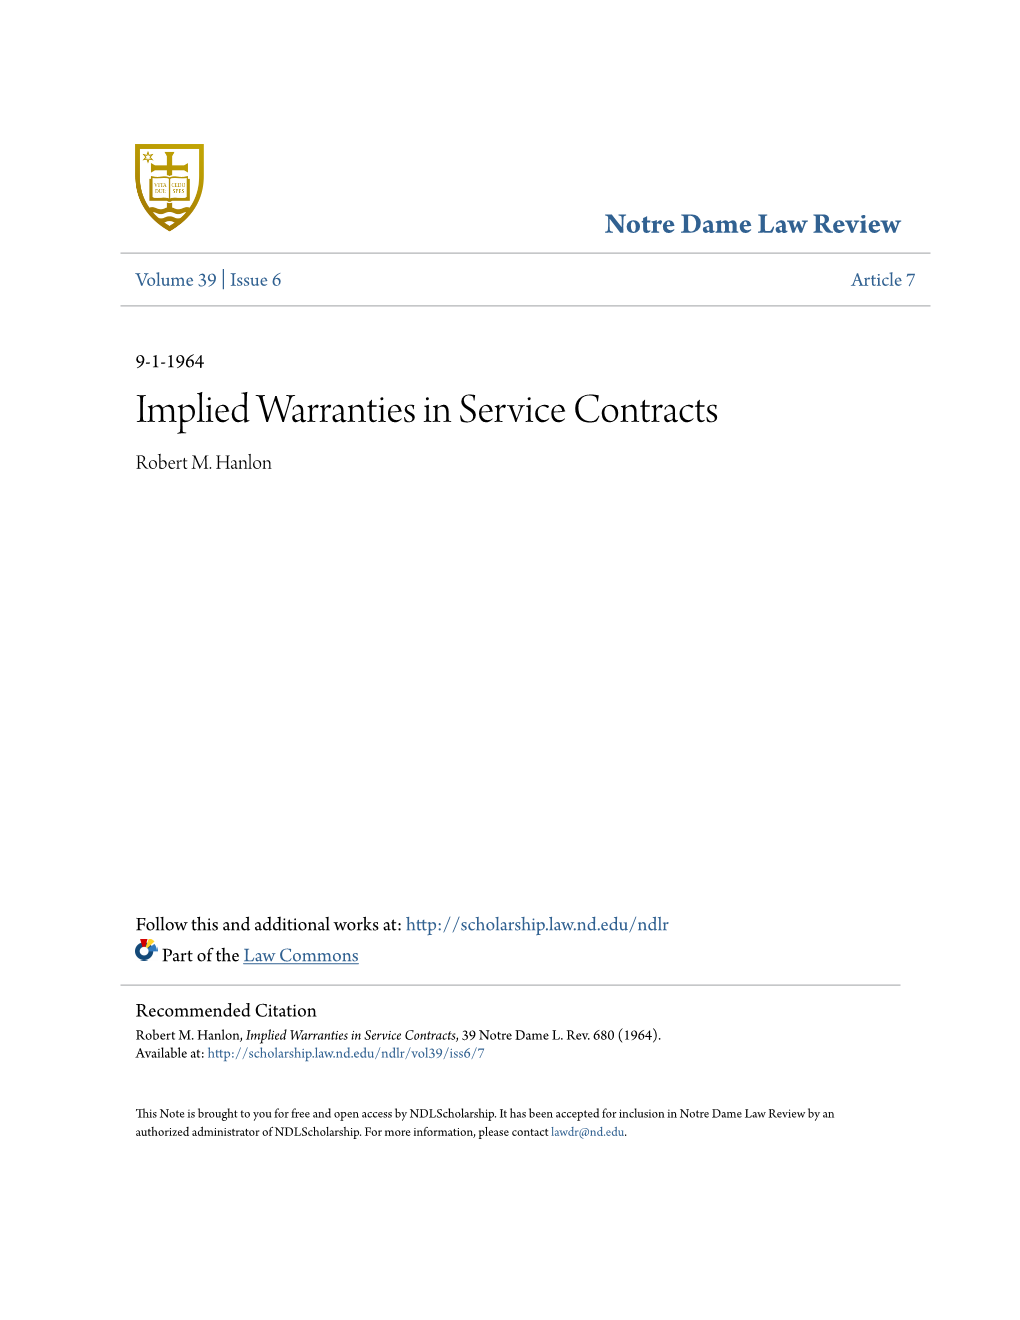 Implied Warranties in Service Contracts Robert M